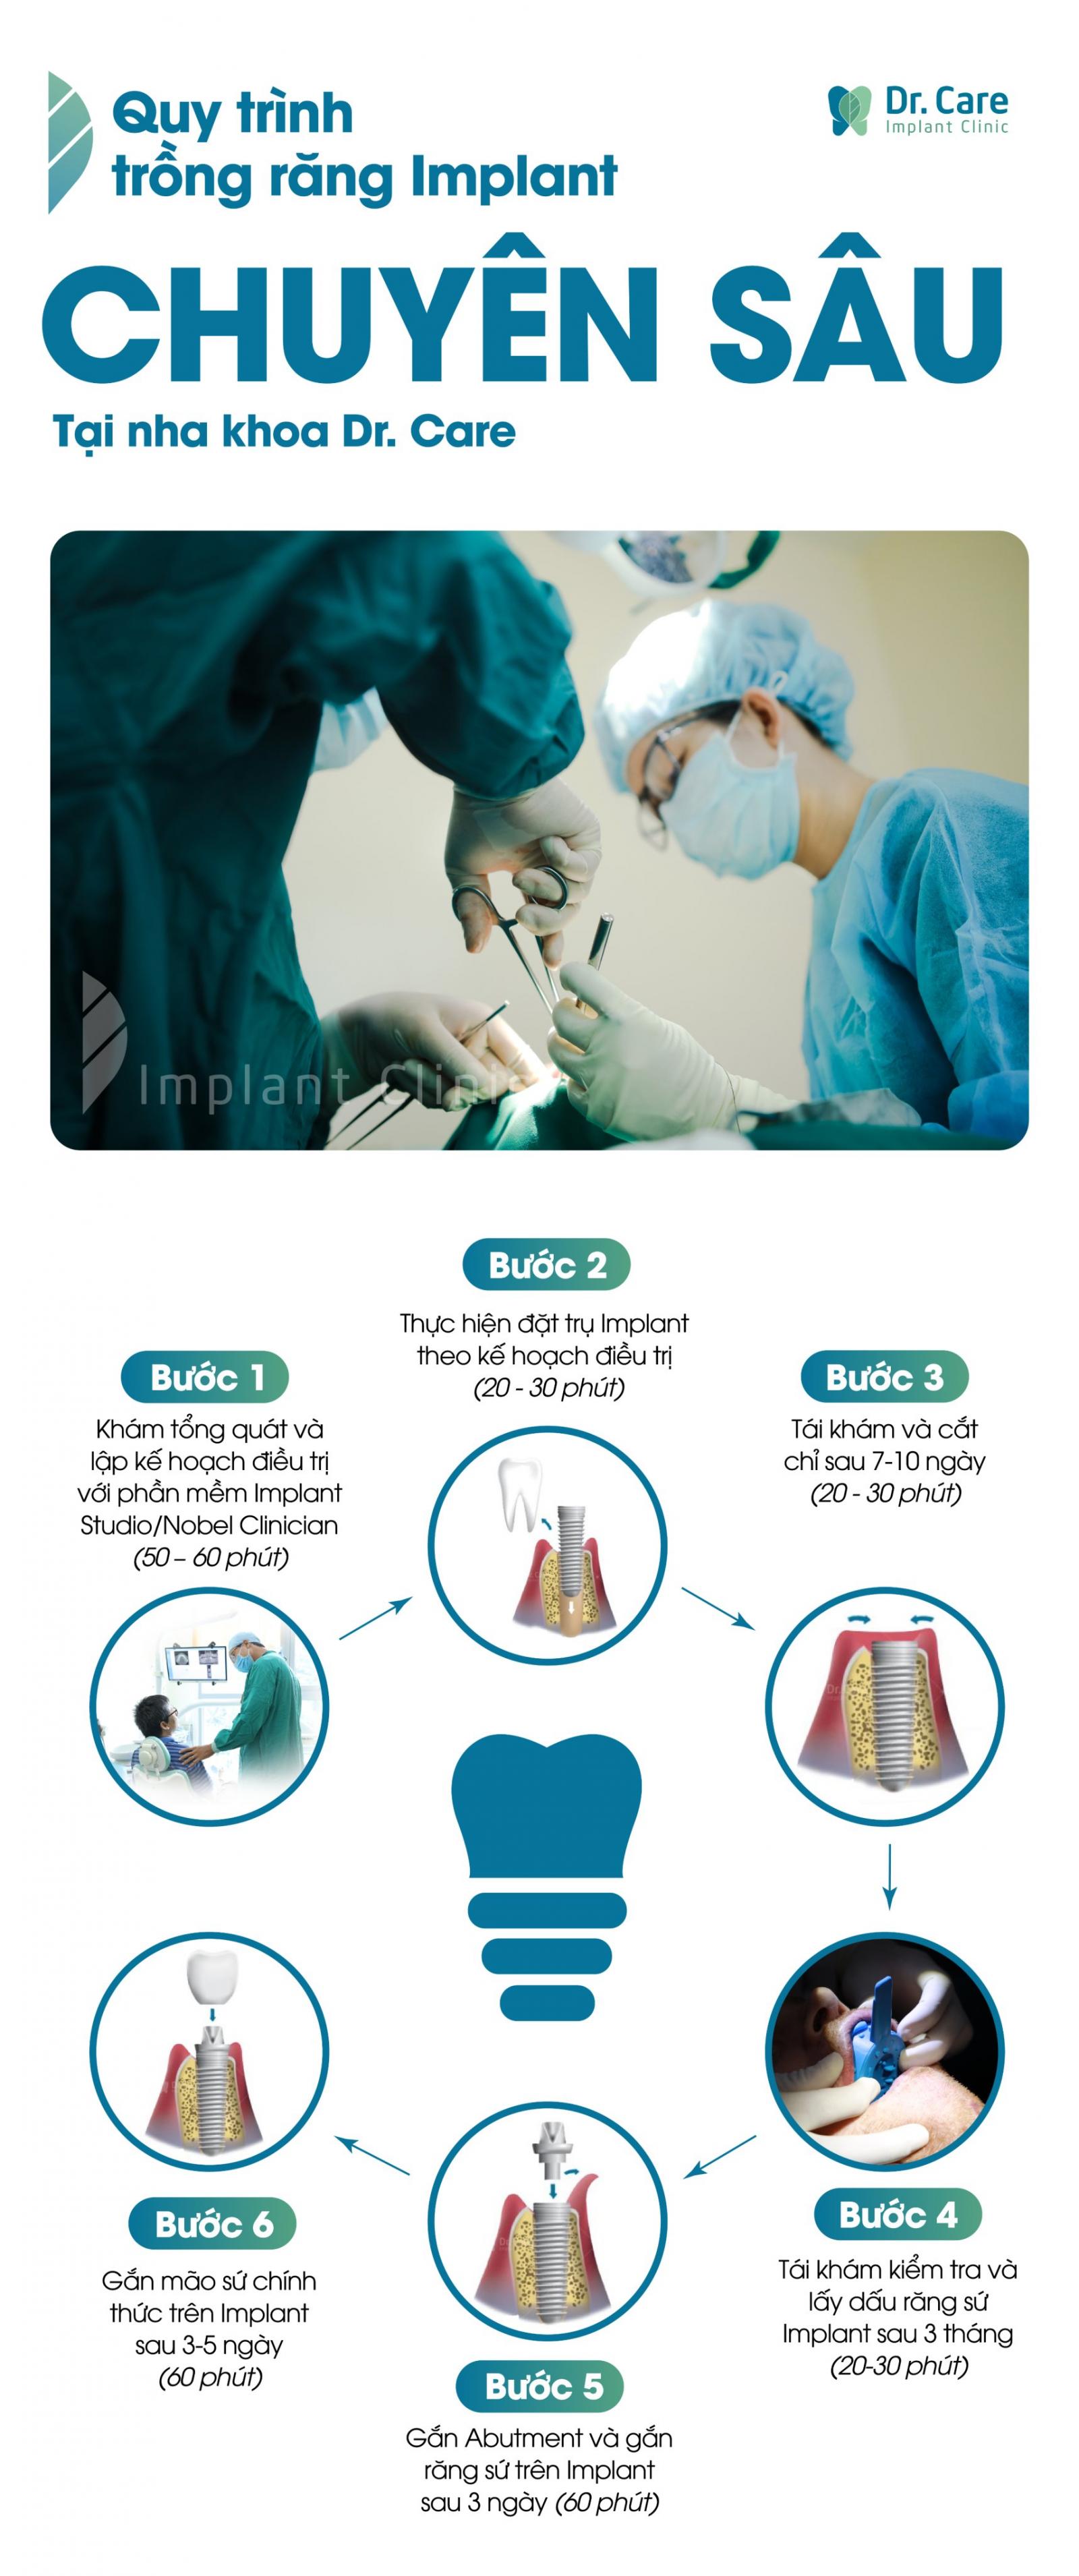 Quy trình phục hình răng số 7 bằng trồng răng Implant tại Dr. Care